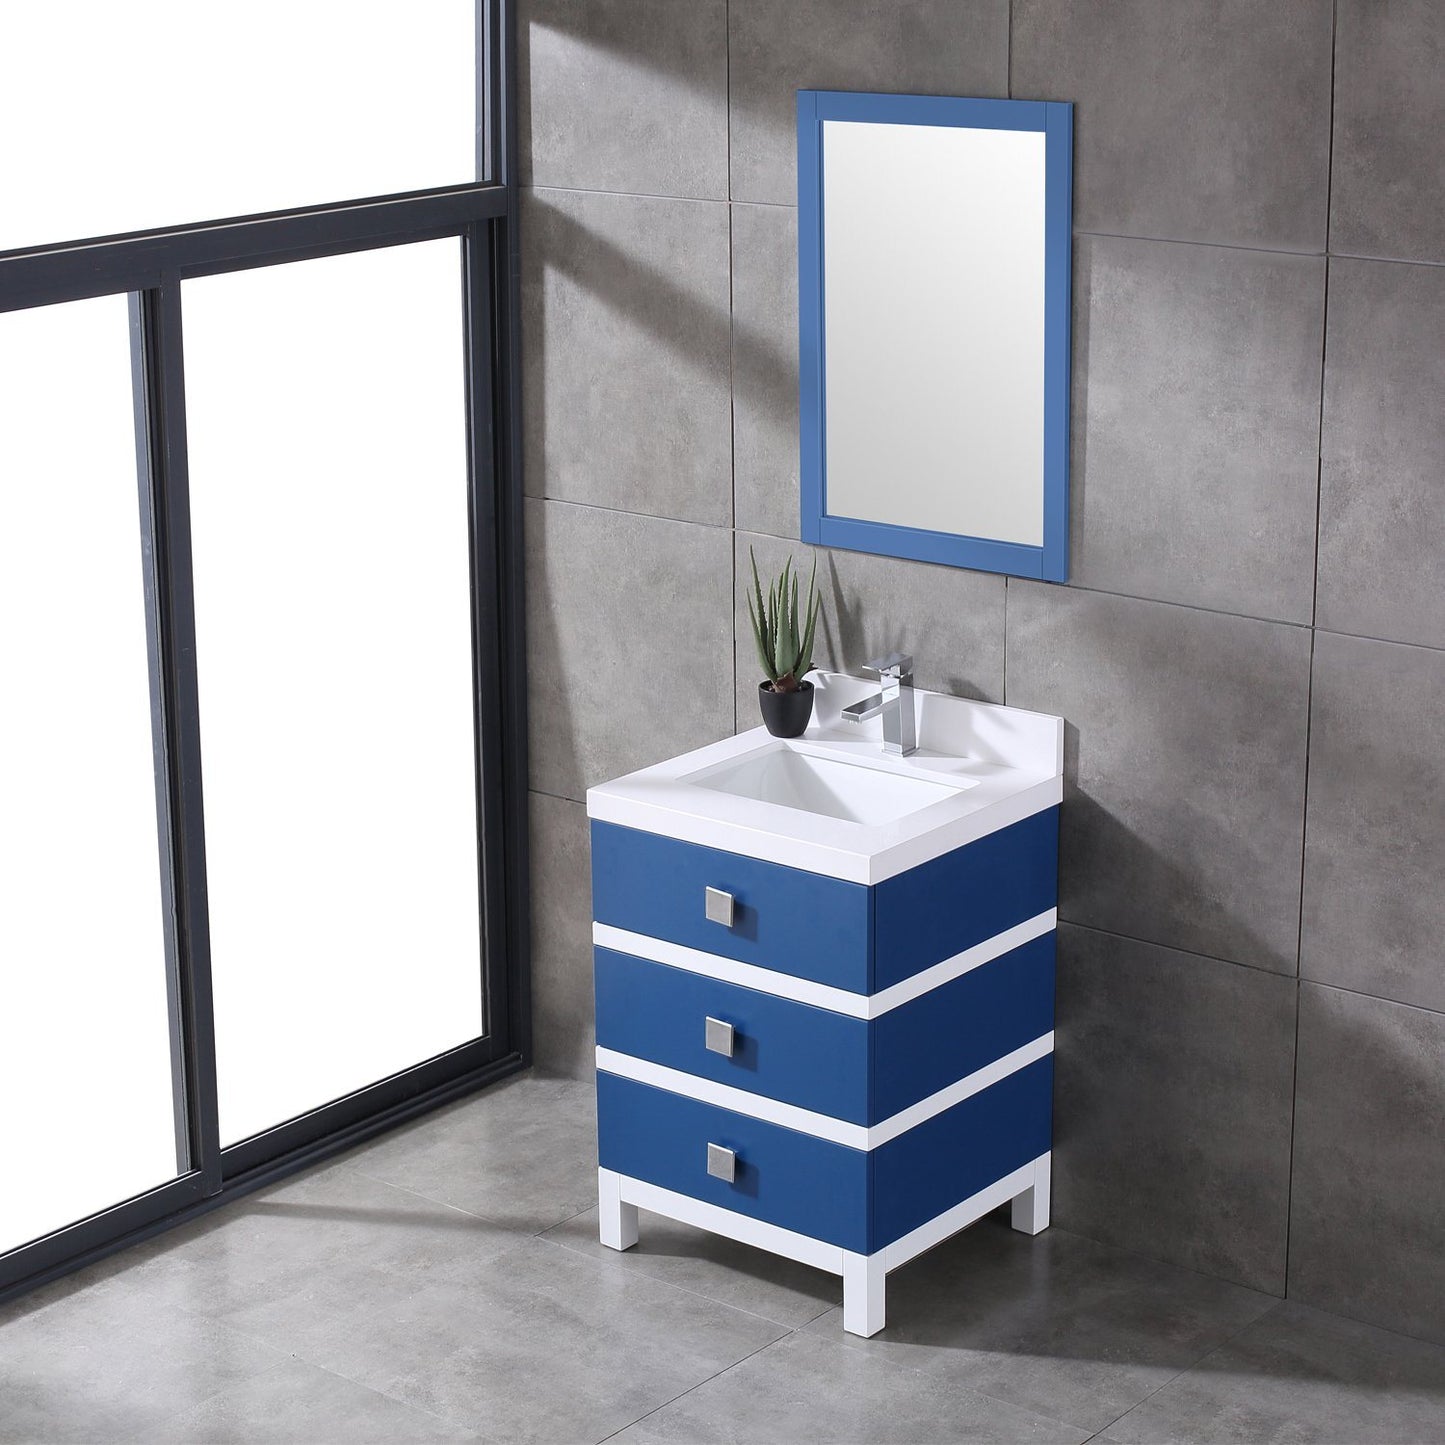 Eviva Sydney 24 Inch Bathroom Vanity with Solid Quartz Counter-top - Luxe Bathroom Vanities Luxury Bathroom Fixtures Bathroom Furniture